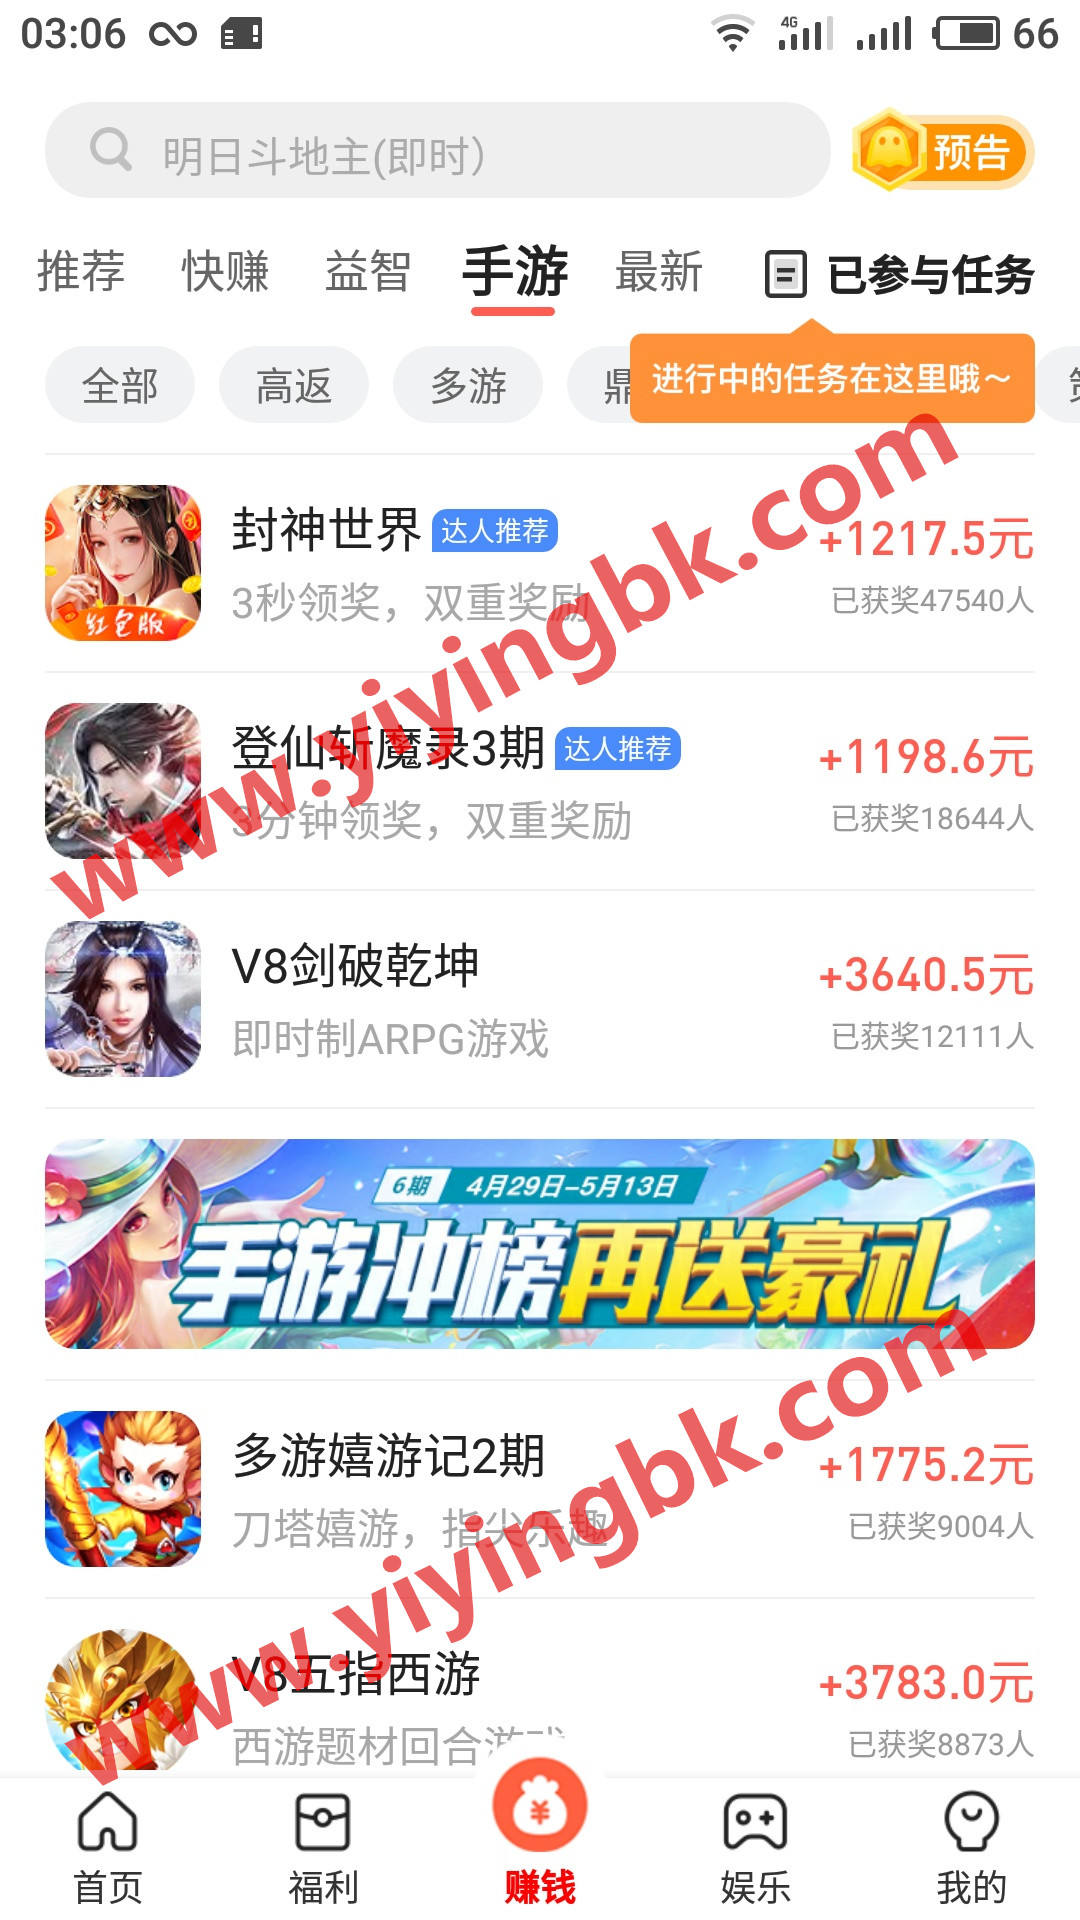 免费玩手机游戏赚钱，微信支付宝直接提现。www.yiyingbk.com